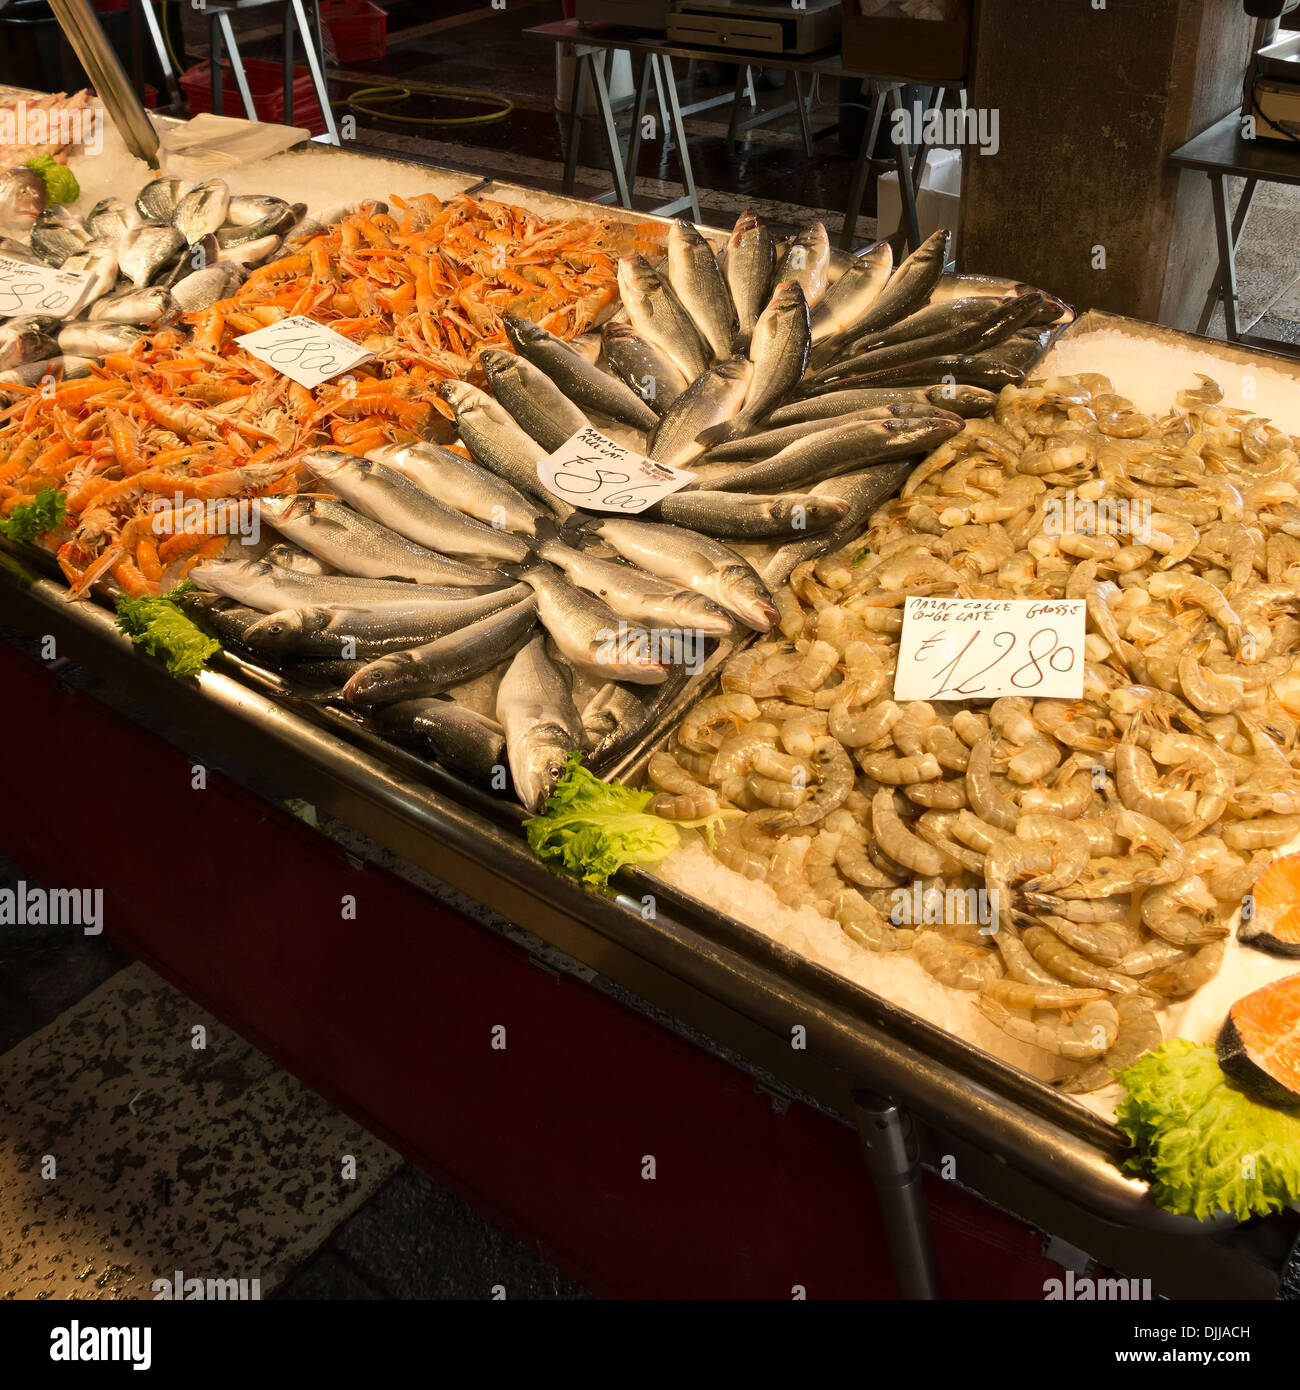 Anzeige von frischem Fisch am Marktstand, Fischmarkt Mercato di Rialto, Venedig, Italien Stockfoto